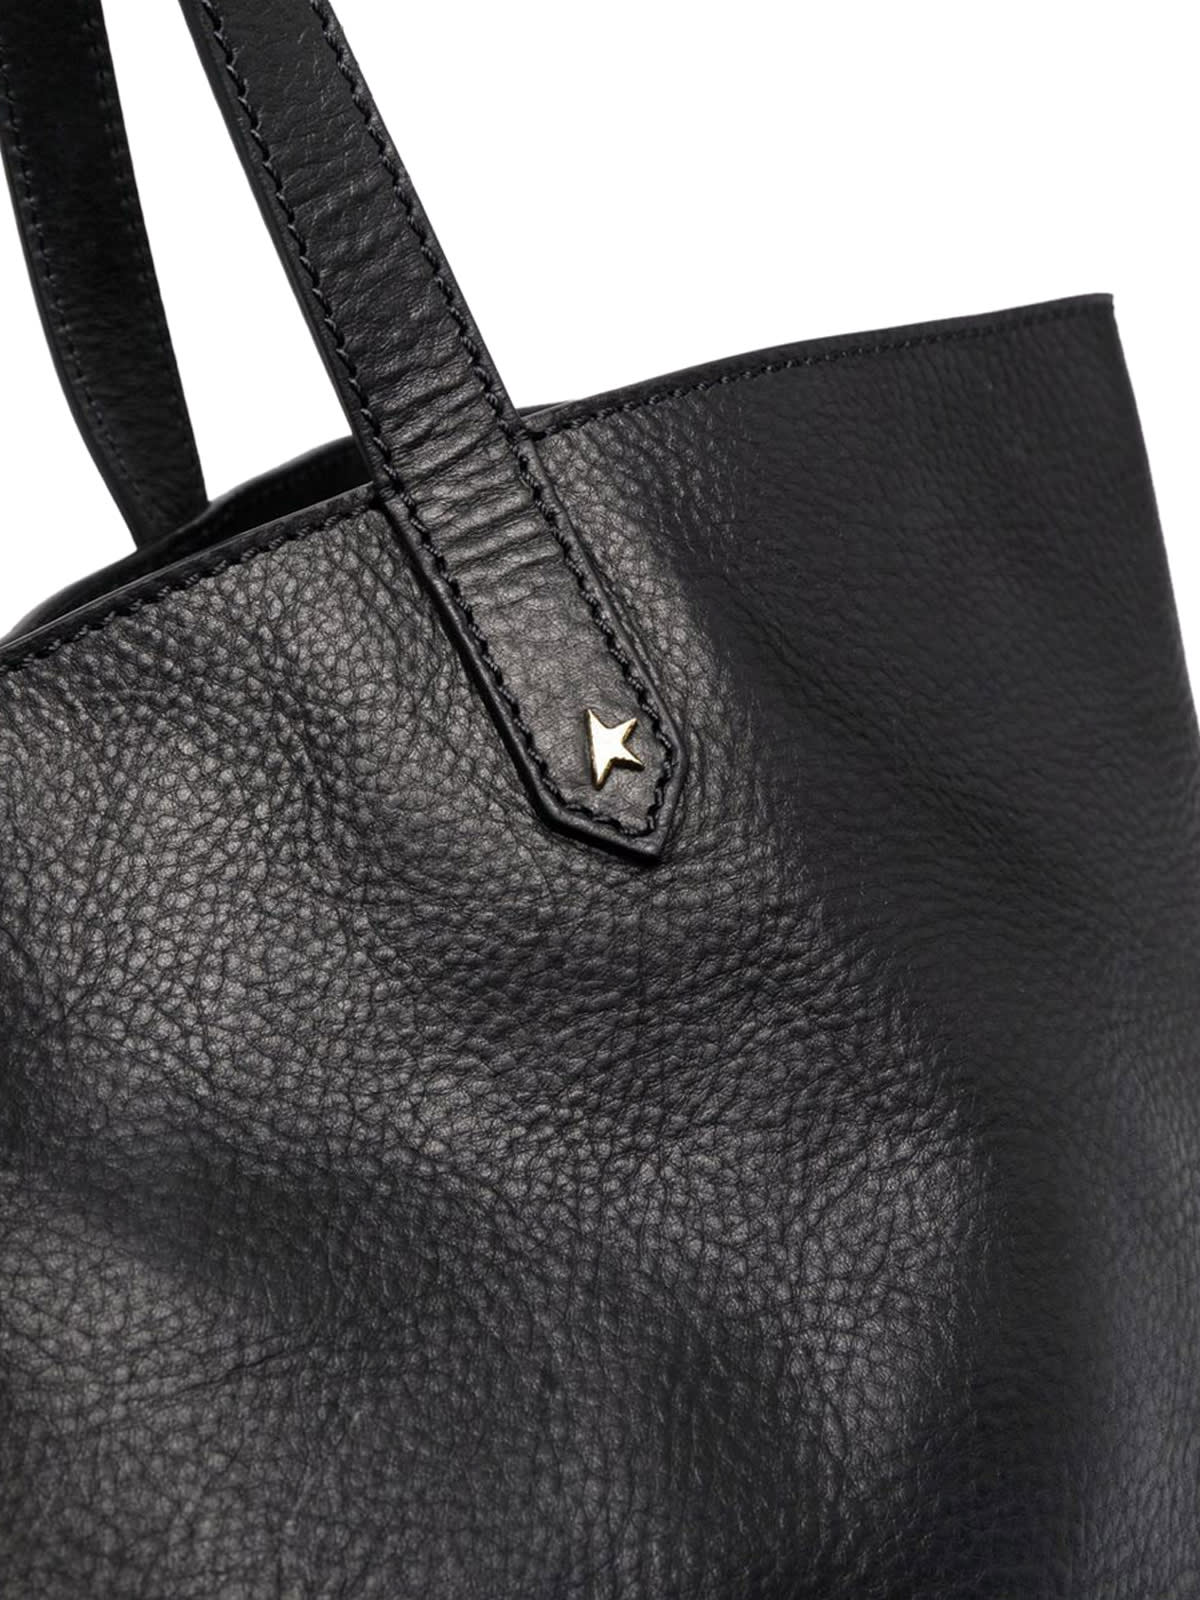 Shop Golden Goose Golden Pasadena Bag Smooth Calfskin Leather In Black